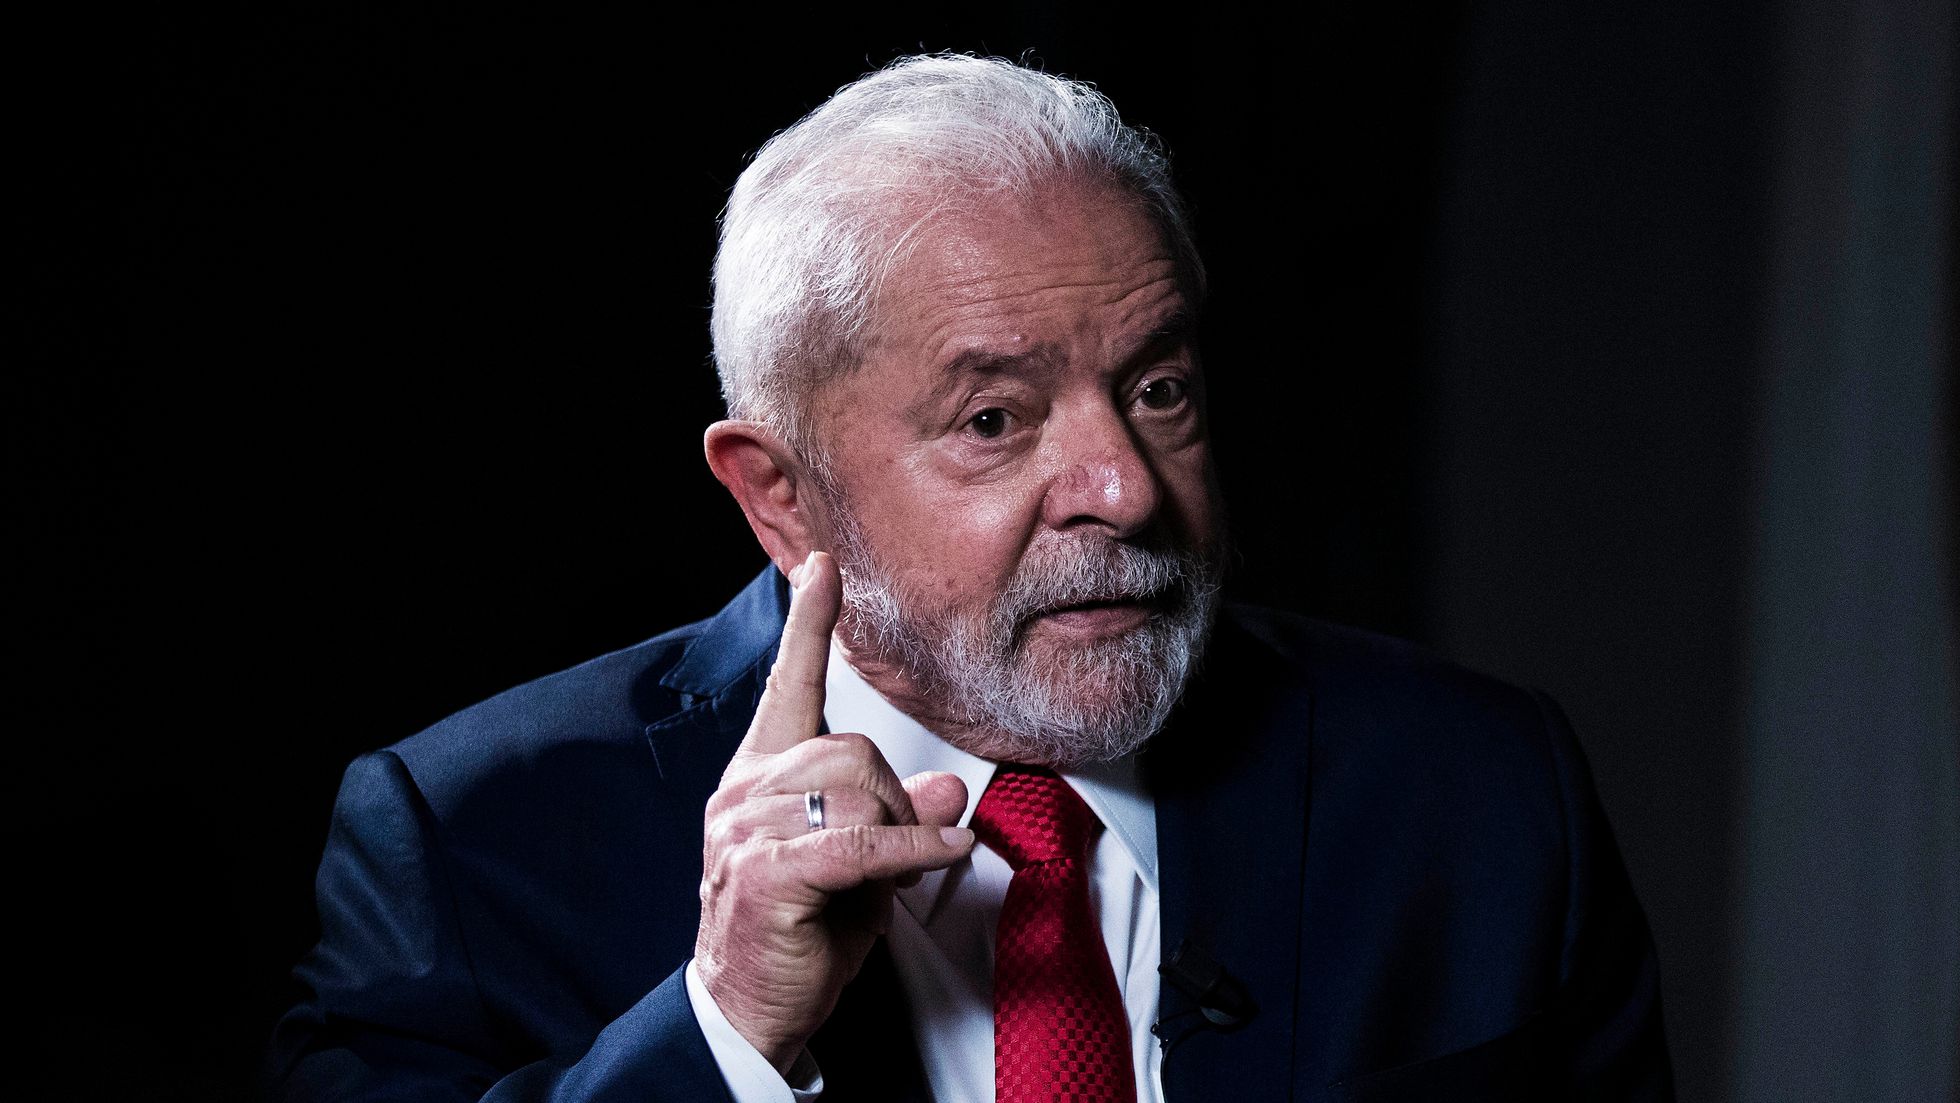 El juicio al expresidente brasileño Lula da Silva violó el debido proceso, afirma el Comité de Derechos Humanos